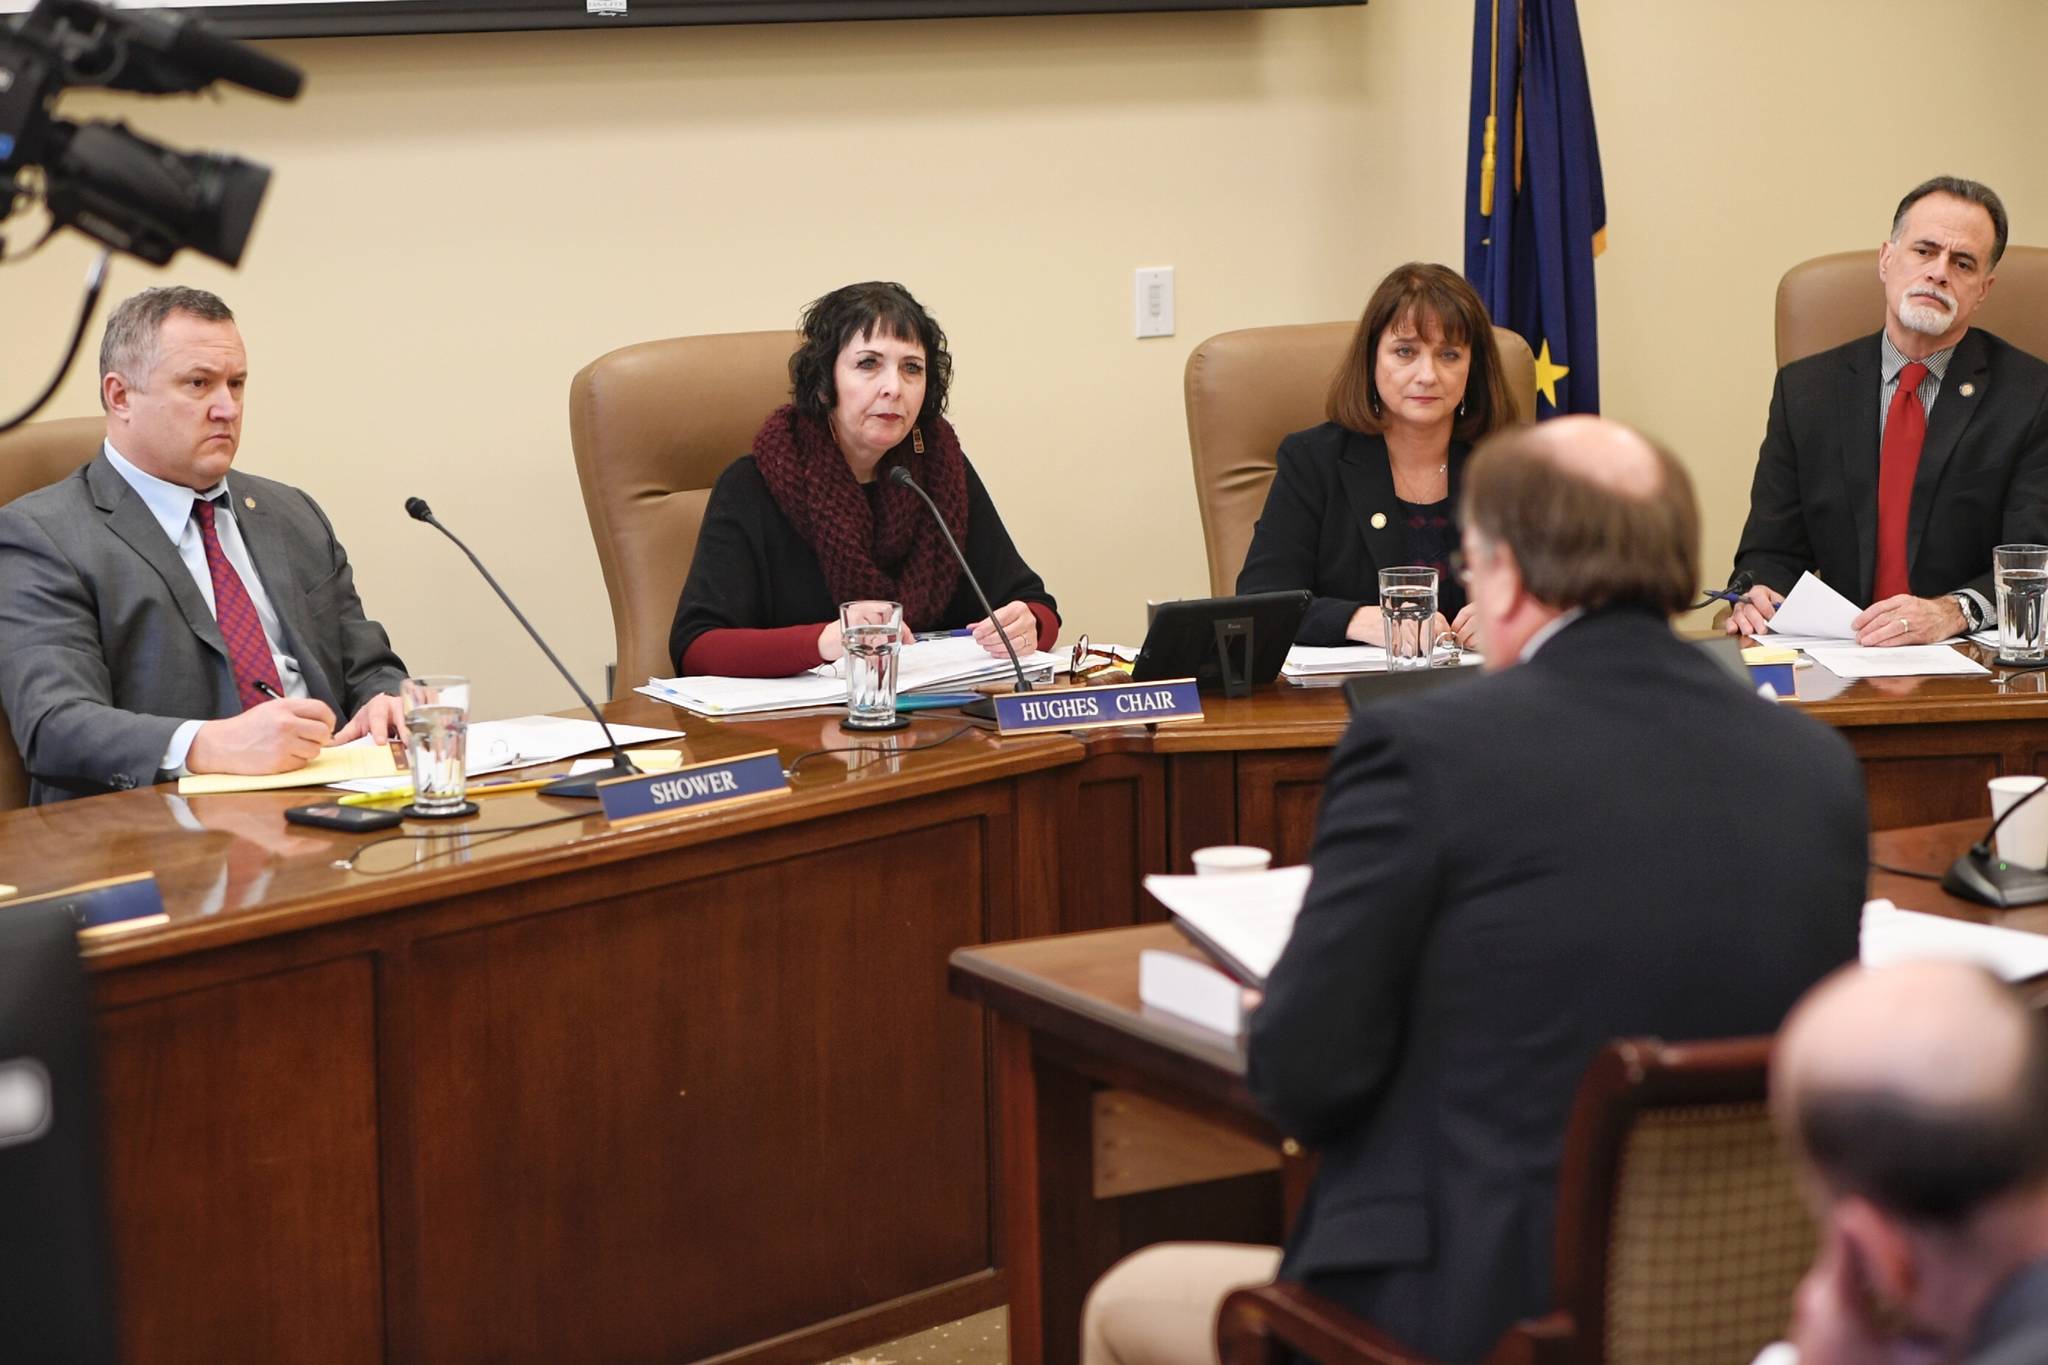 Capitol Live: Senators examine new crime bill, will take public comment